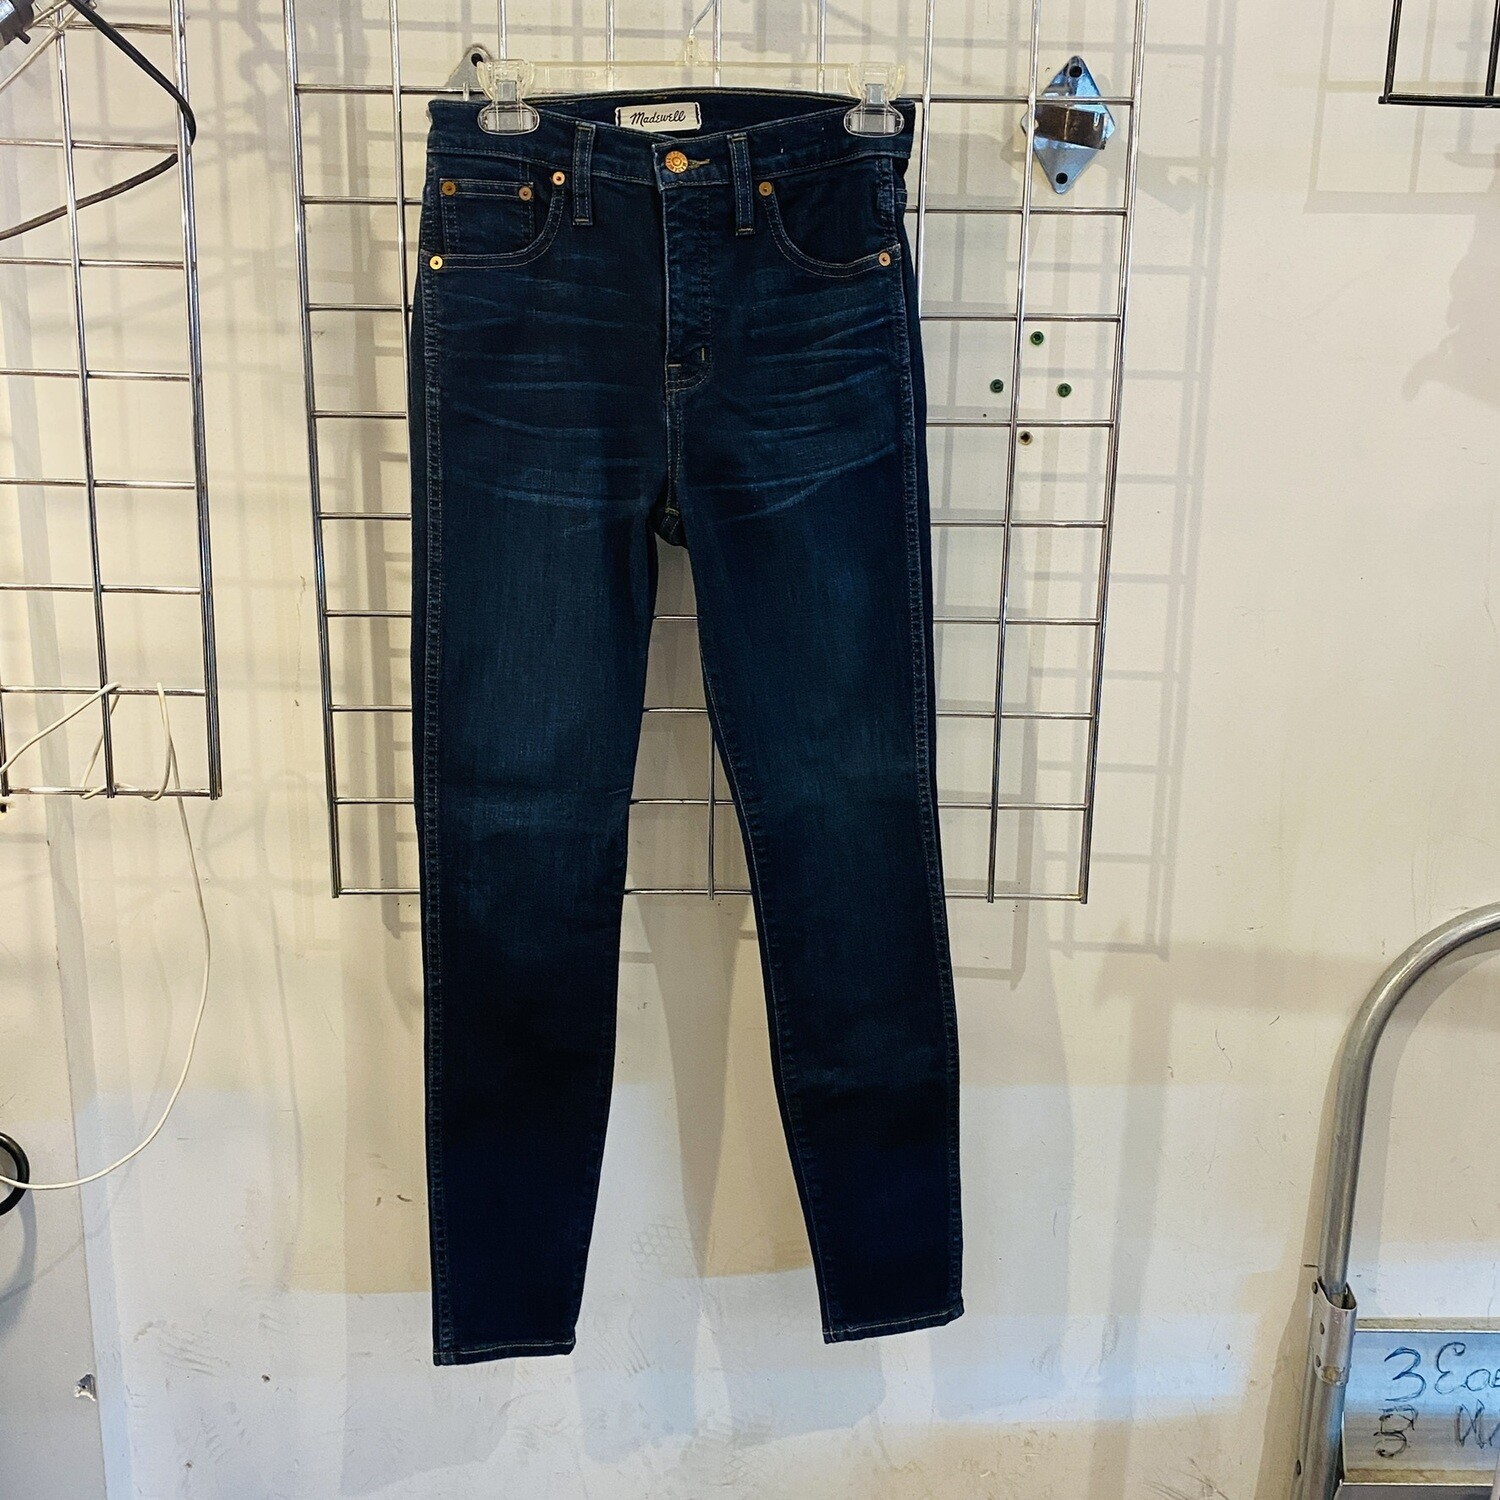 Size 26 Madewell 10” High Riser Skinny Skinny Jean